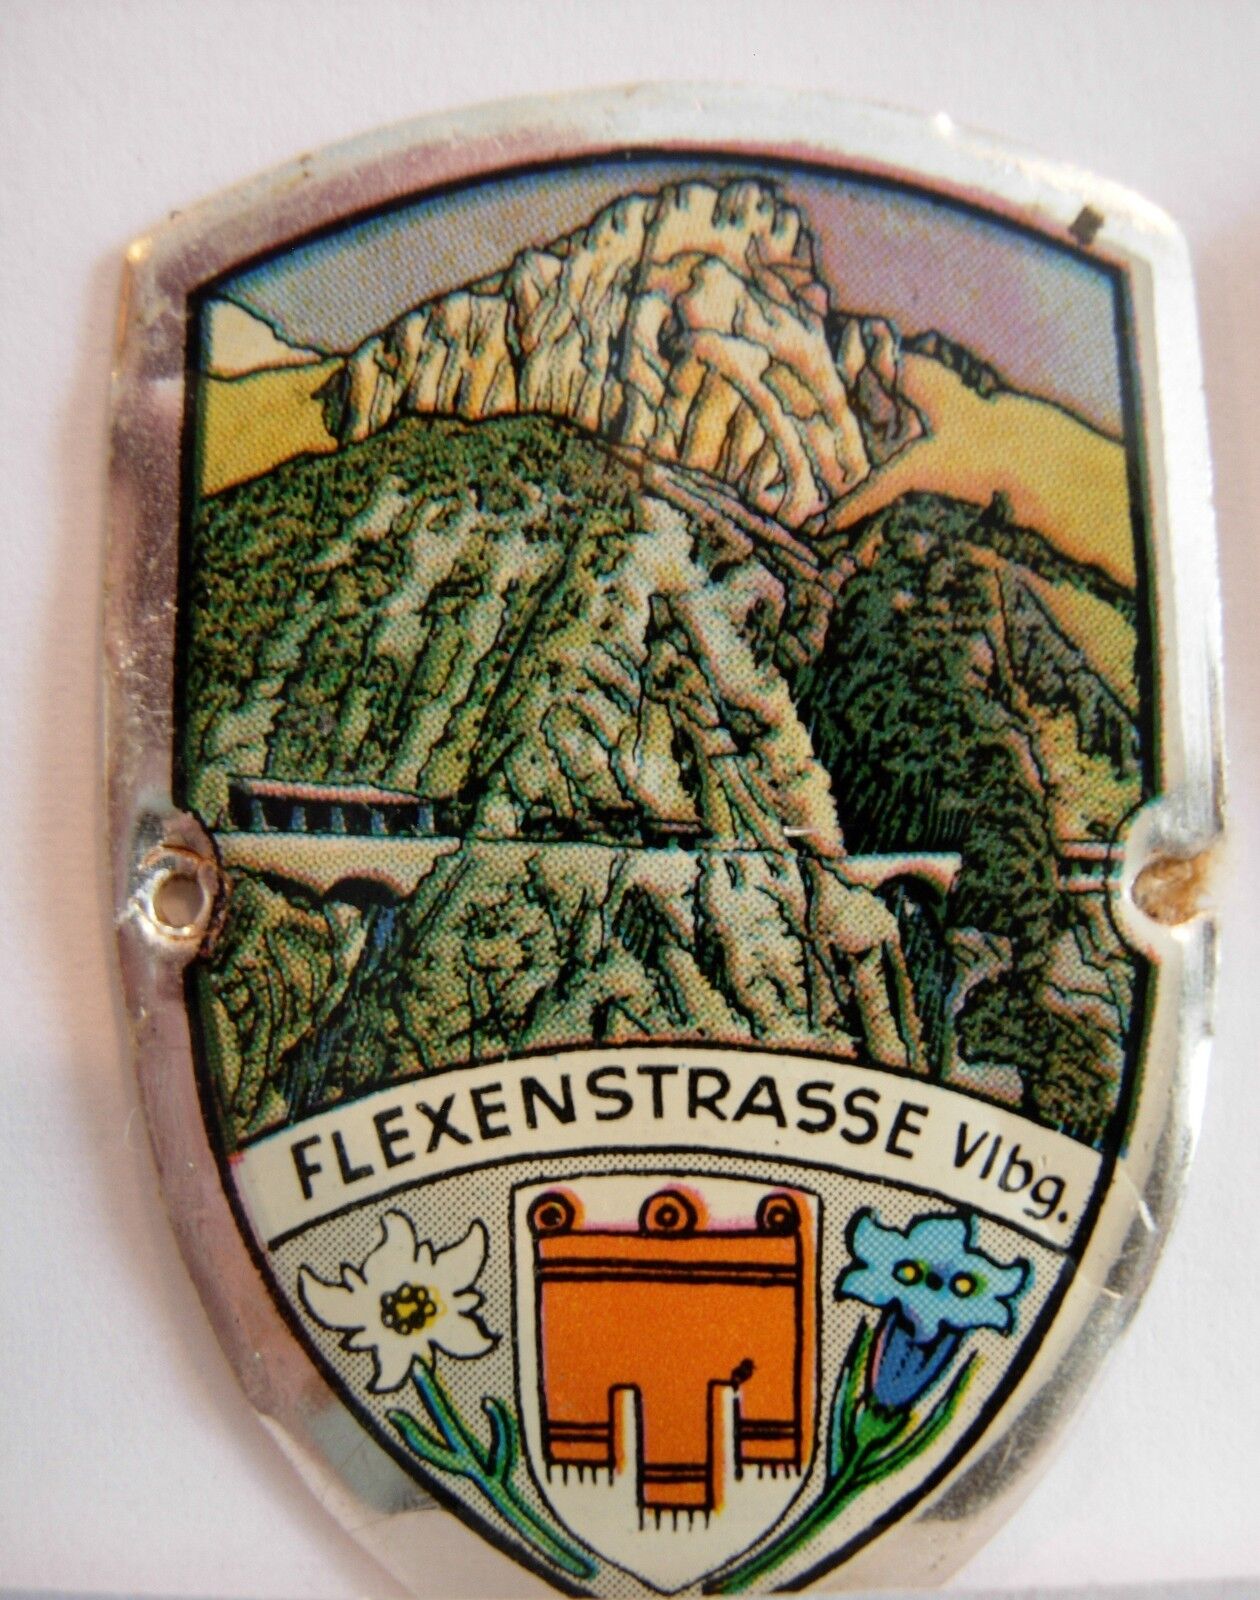 Flexenstrasse used badge mount stocknagel hiking medallion G5571